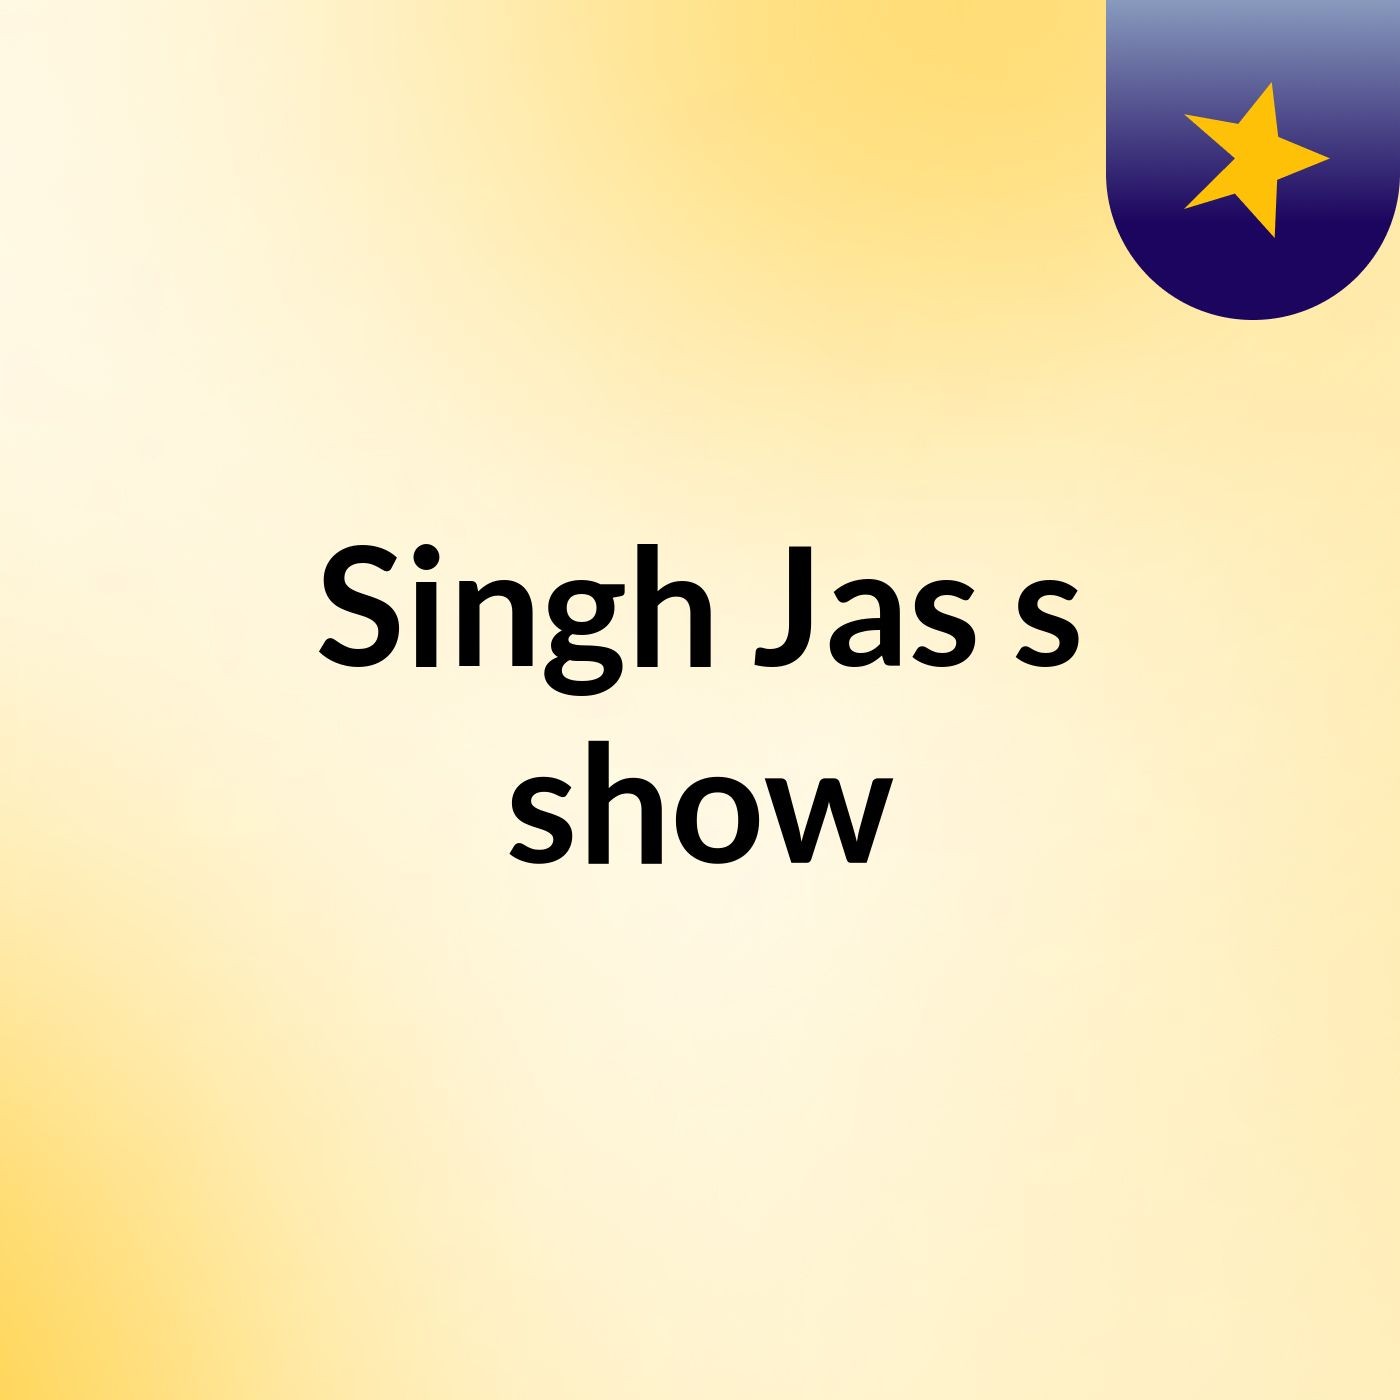 Singh Jas's show